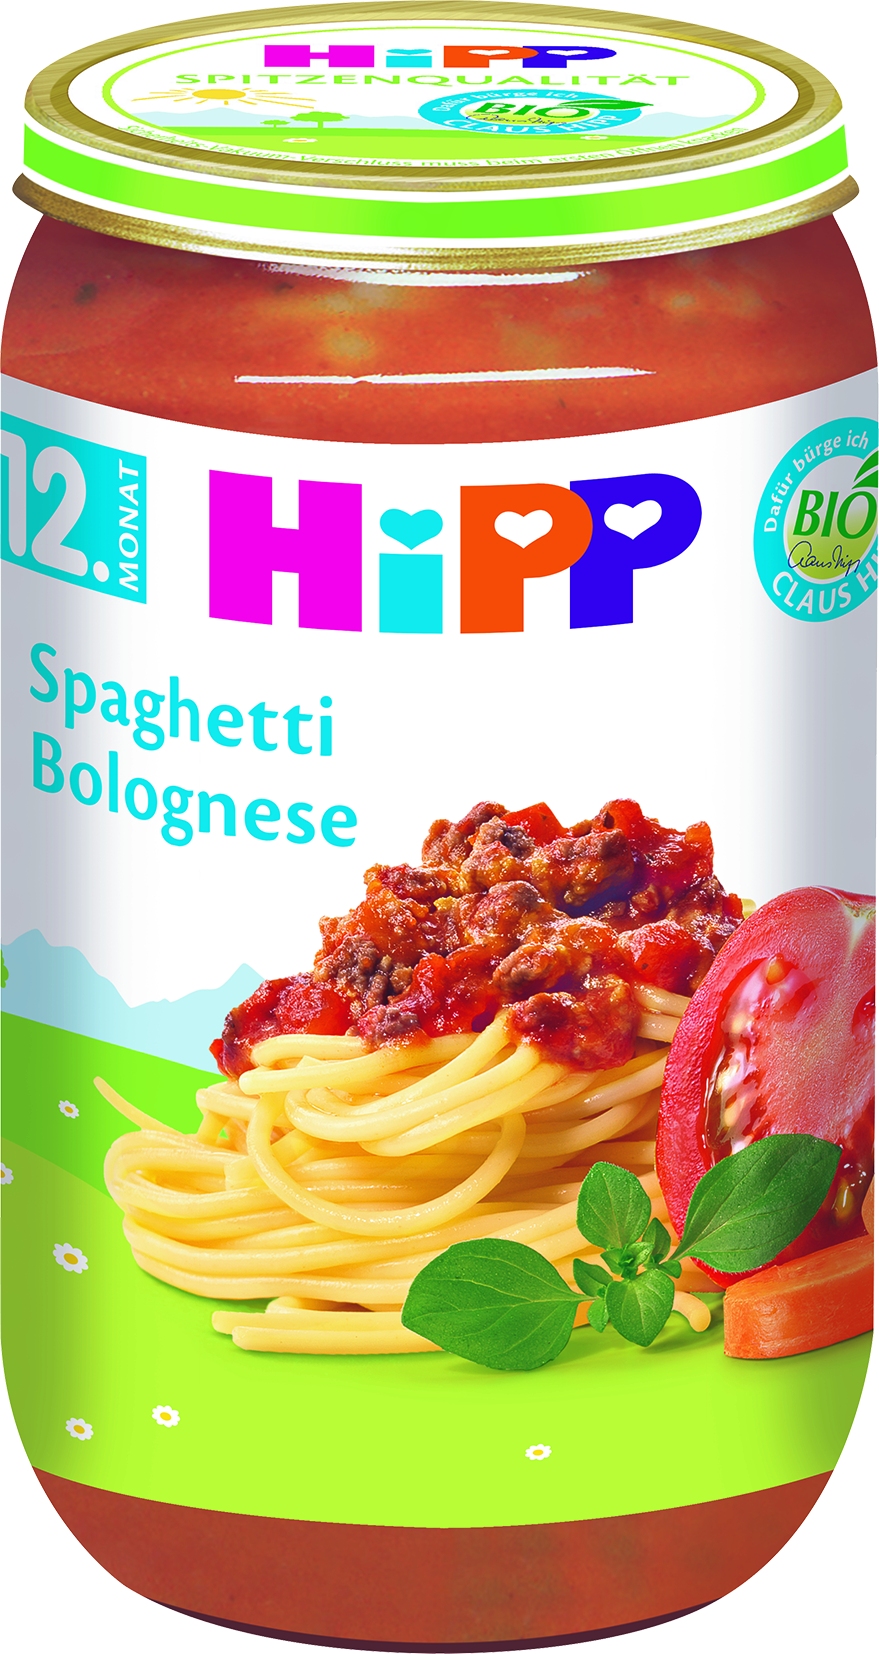 Bio 6820-01 Spaghetti Bolognese